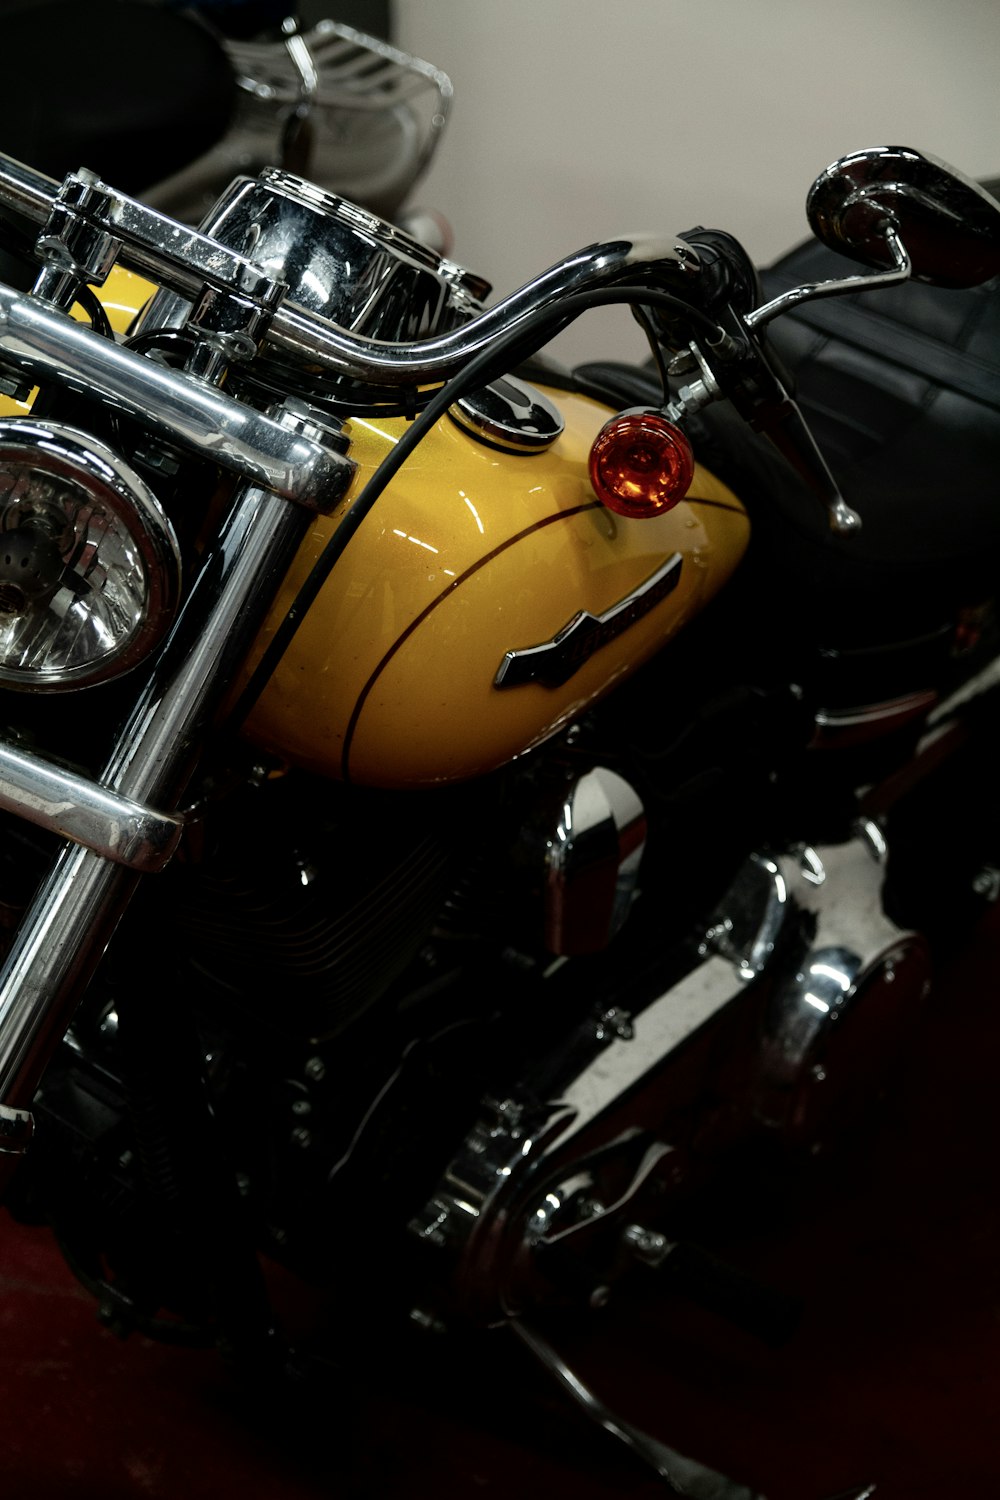 motocicleta amarela e preta